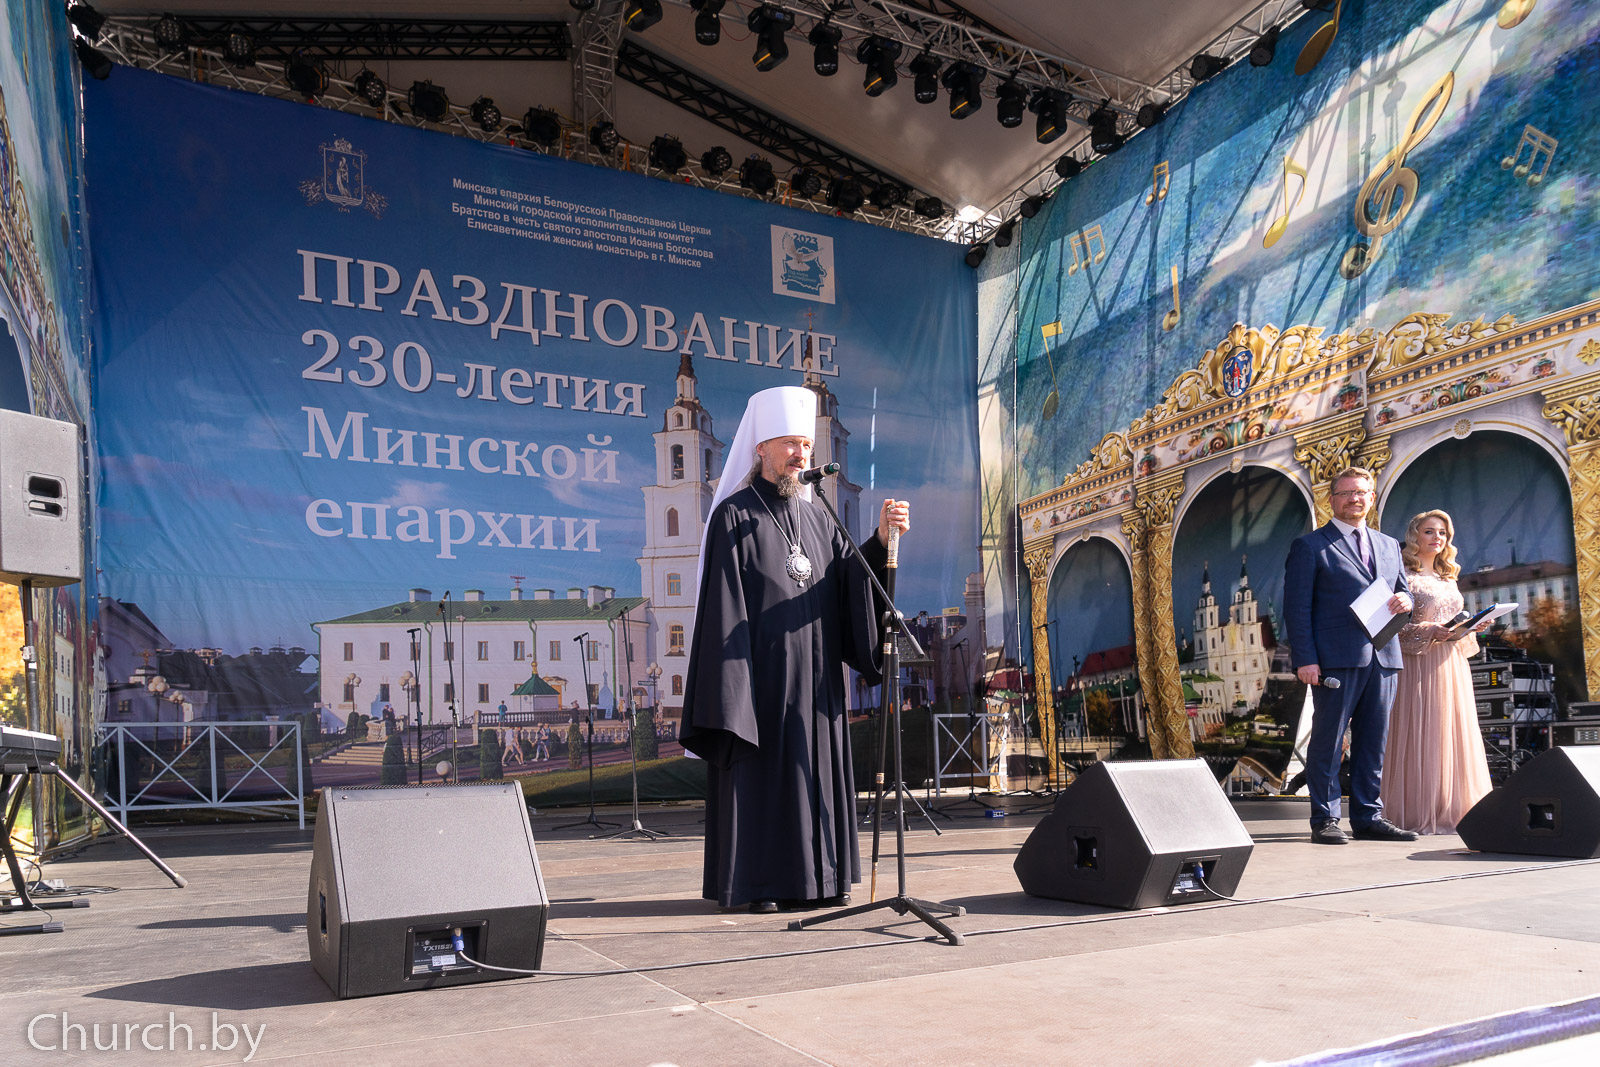 Минская епархия белорусской православной церкви отметила 230-летие